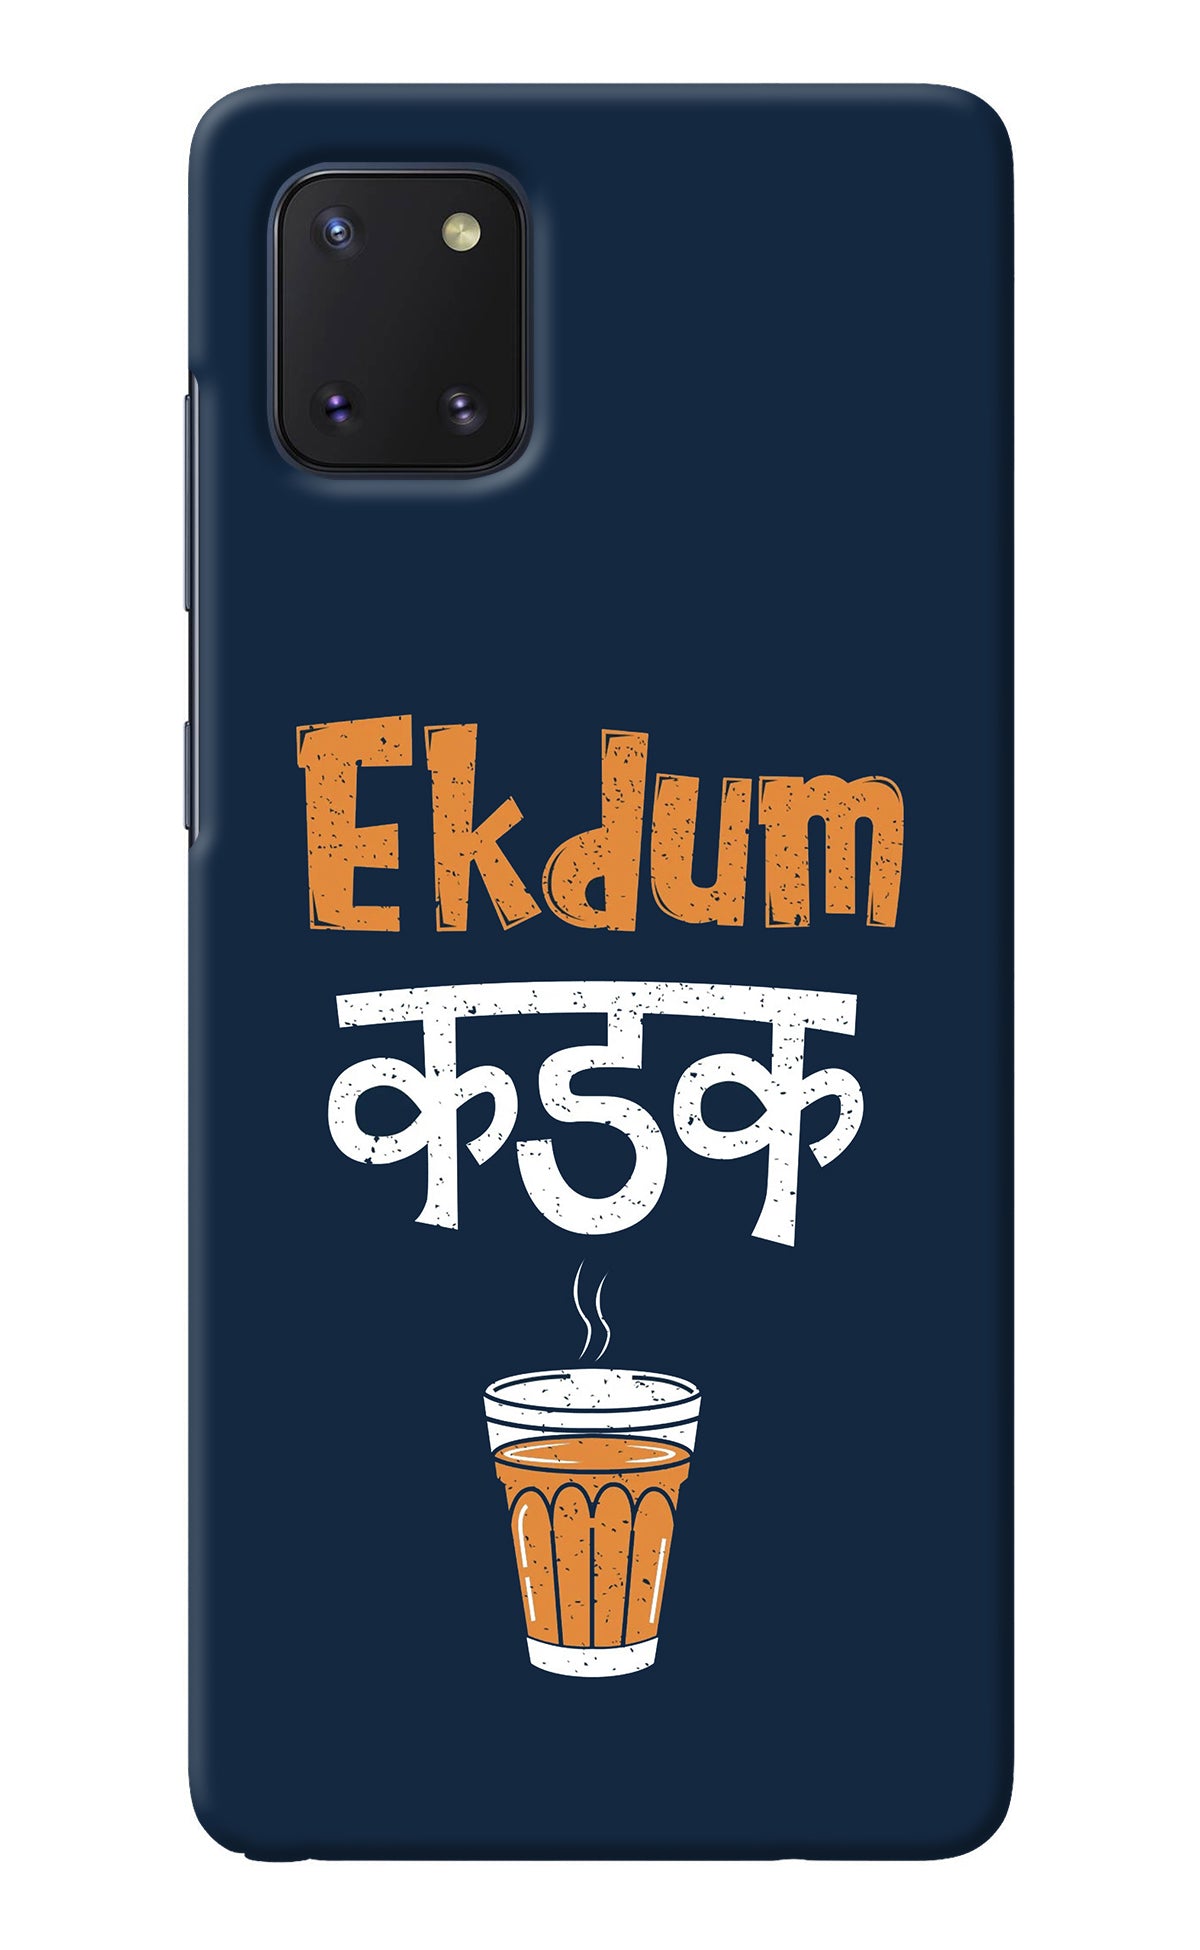 Ekdum Kadak Chai Samsung Note 10 Lite Back Cover